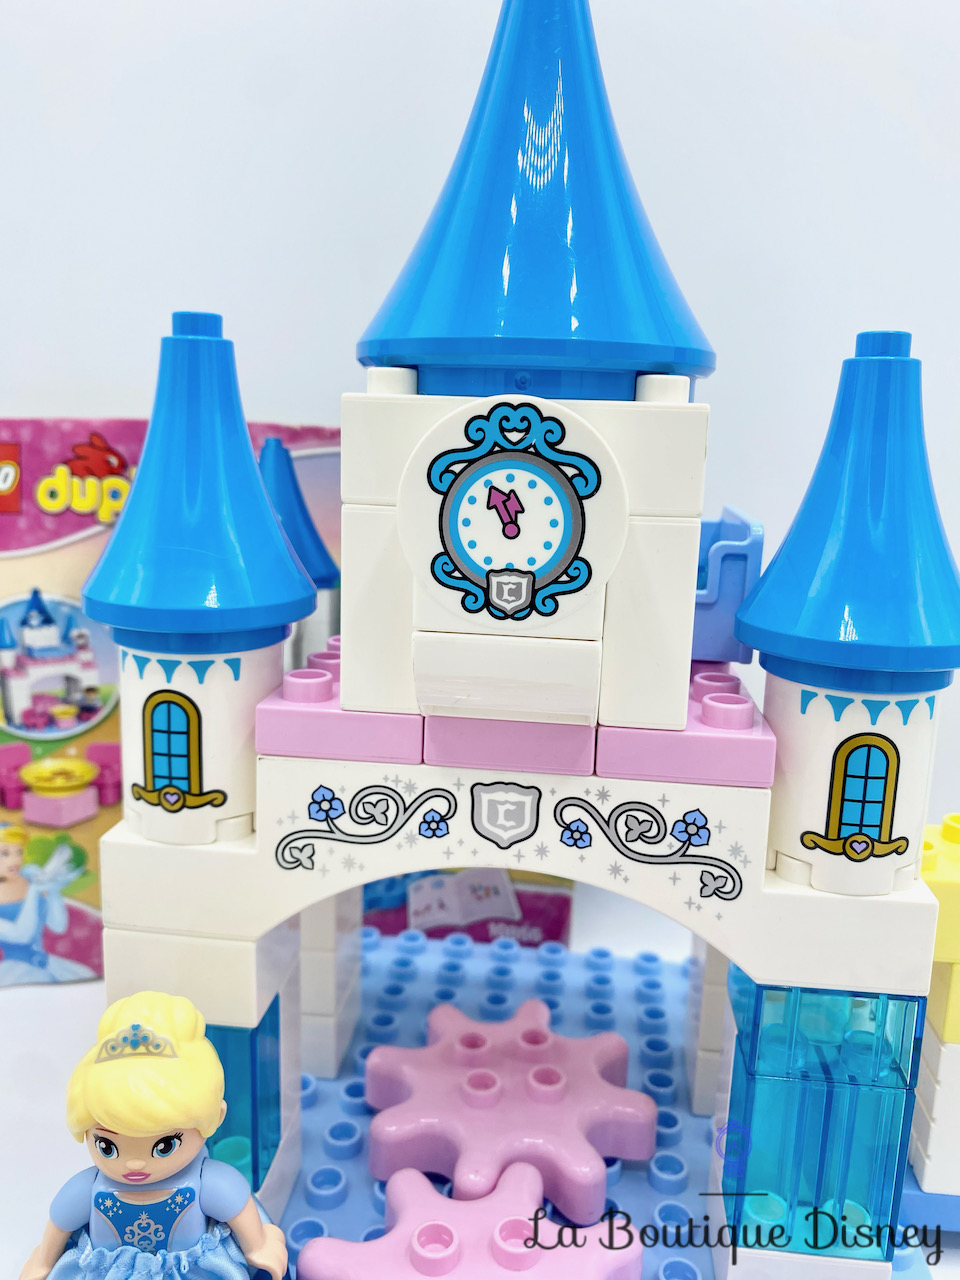 jouet-lego-duplo-10855-le-chateau-magique-de-cendrillon-disney-princess-5